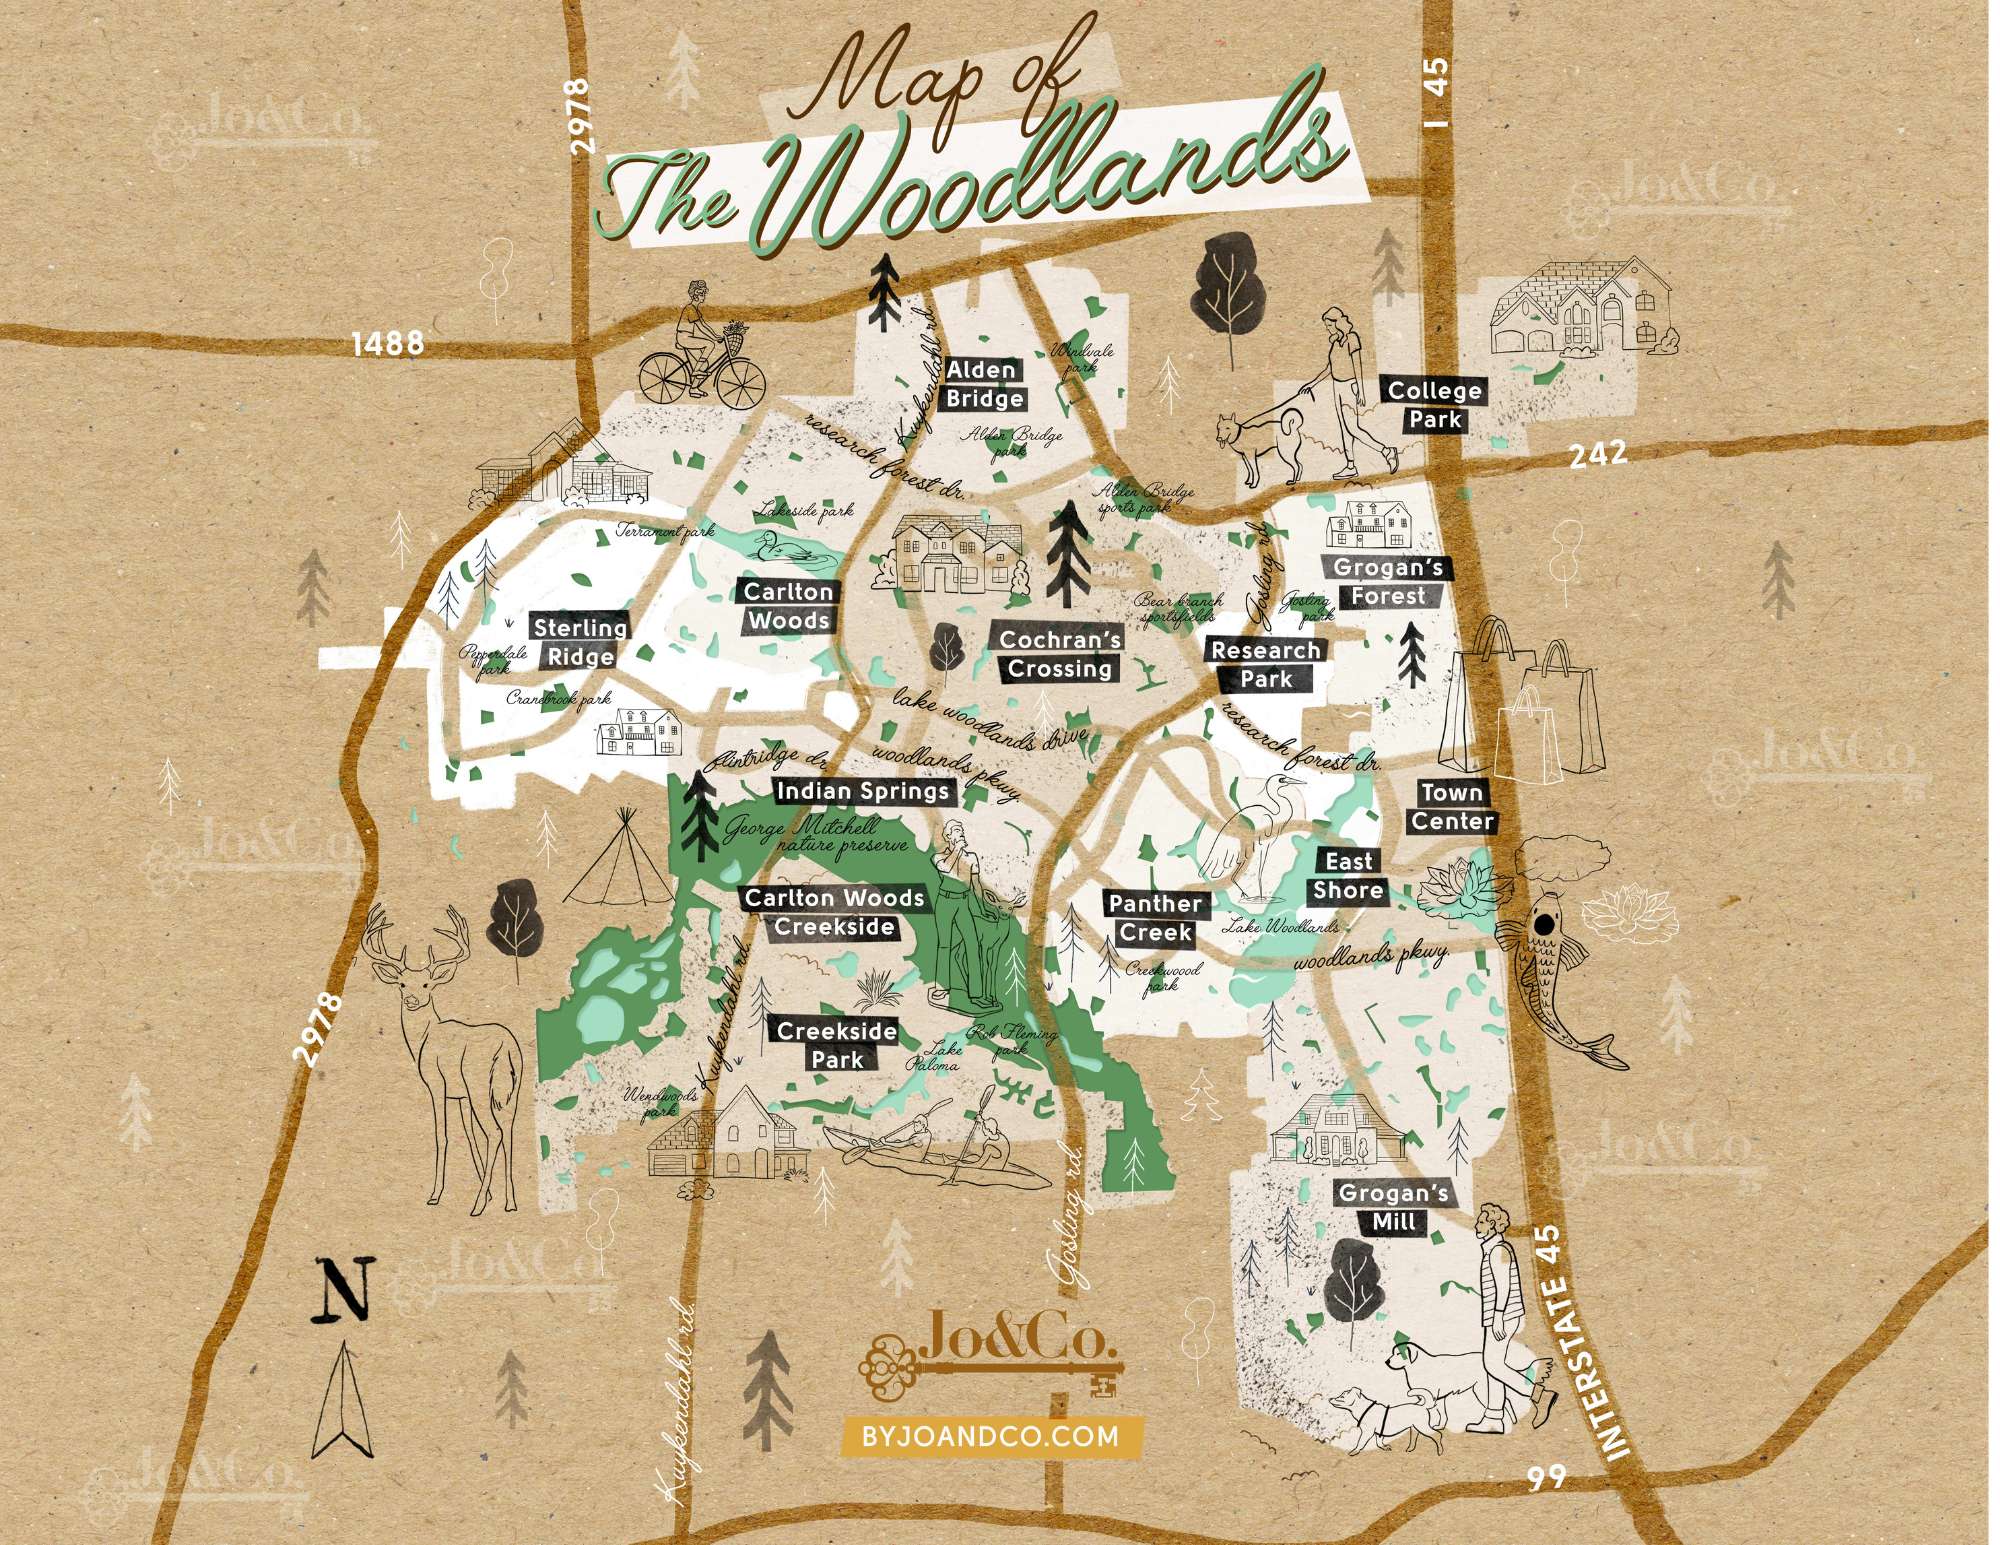 The Best Neighborhoods in The Woodlands, TX